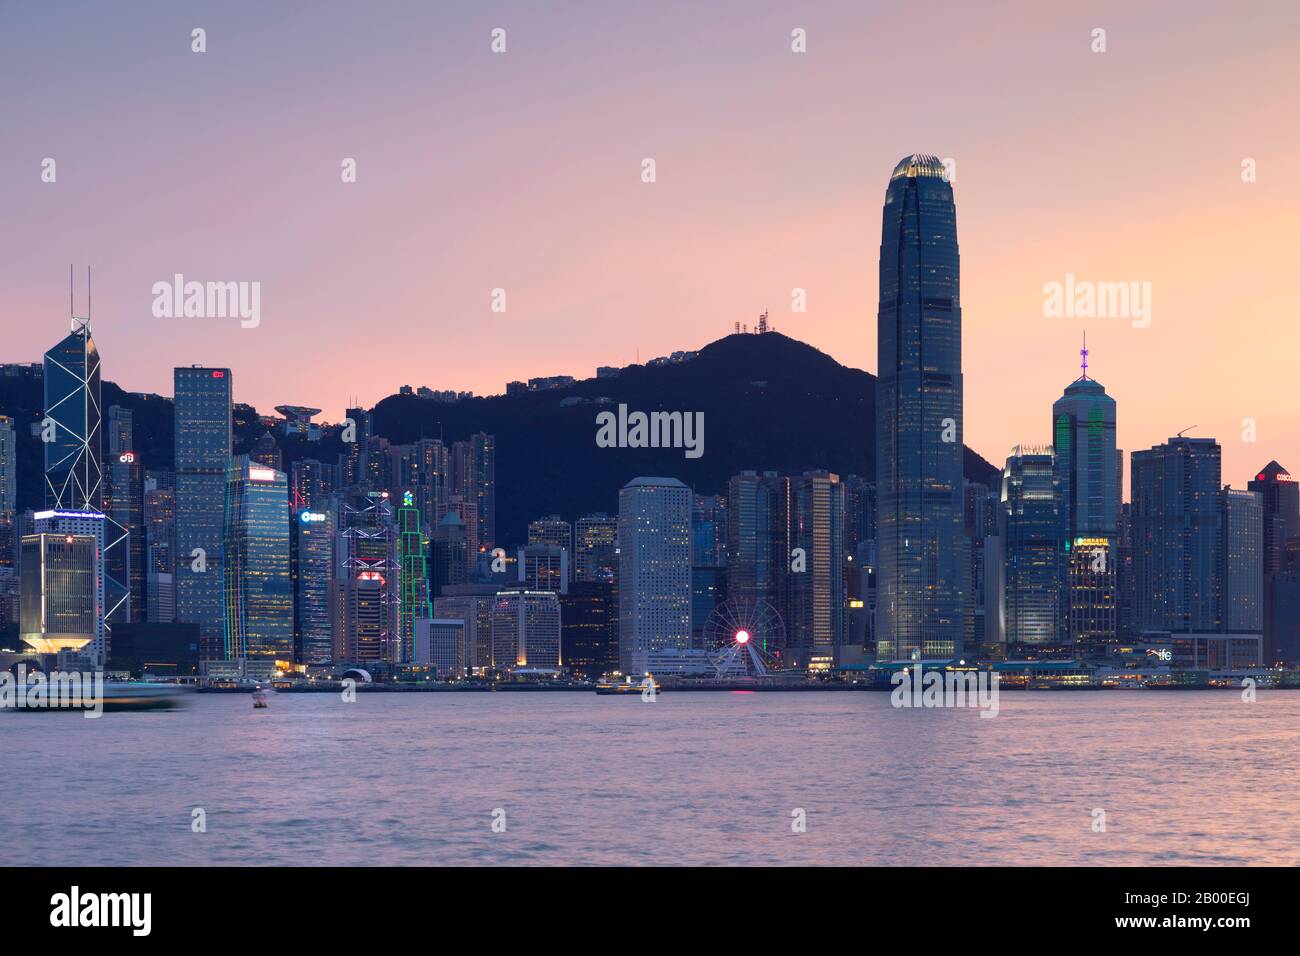 Skyline of Hong Kong Island at sunset, Hong Kong, China Stock Photo - Alamy